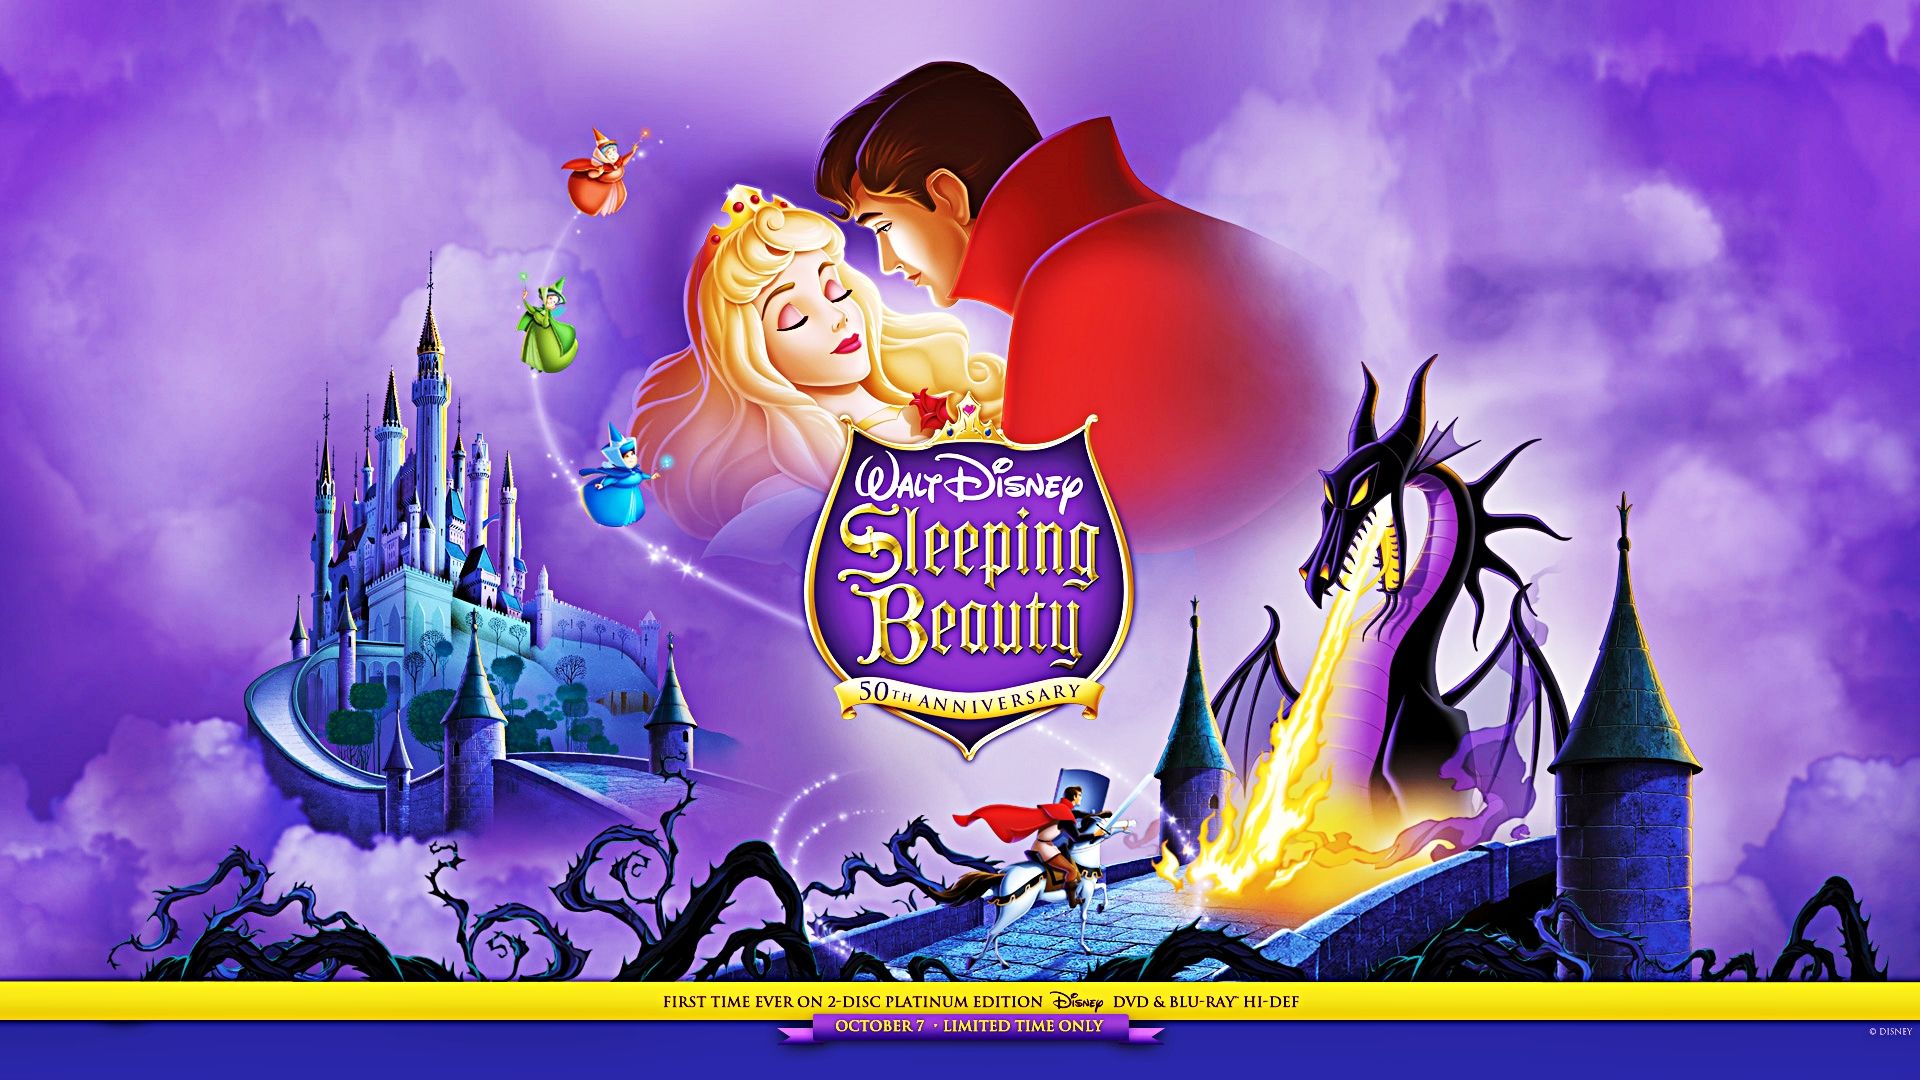 Free download Walt Disney Wallpaper Sleeping Beauty Walt Disney